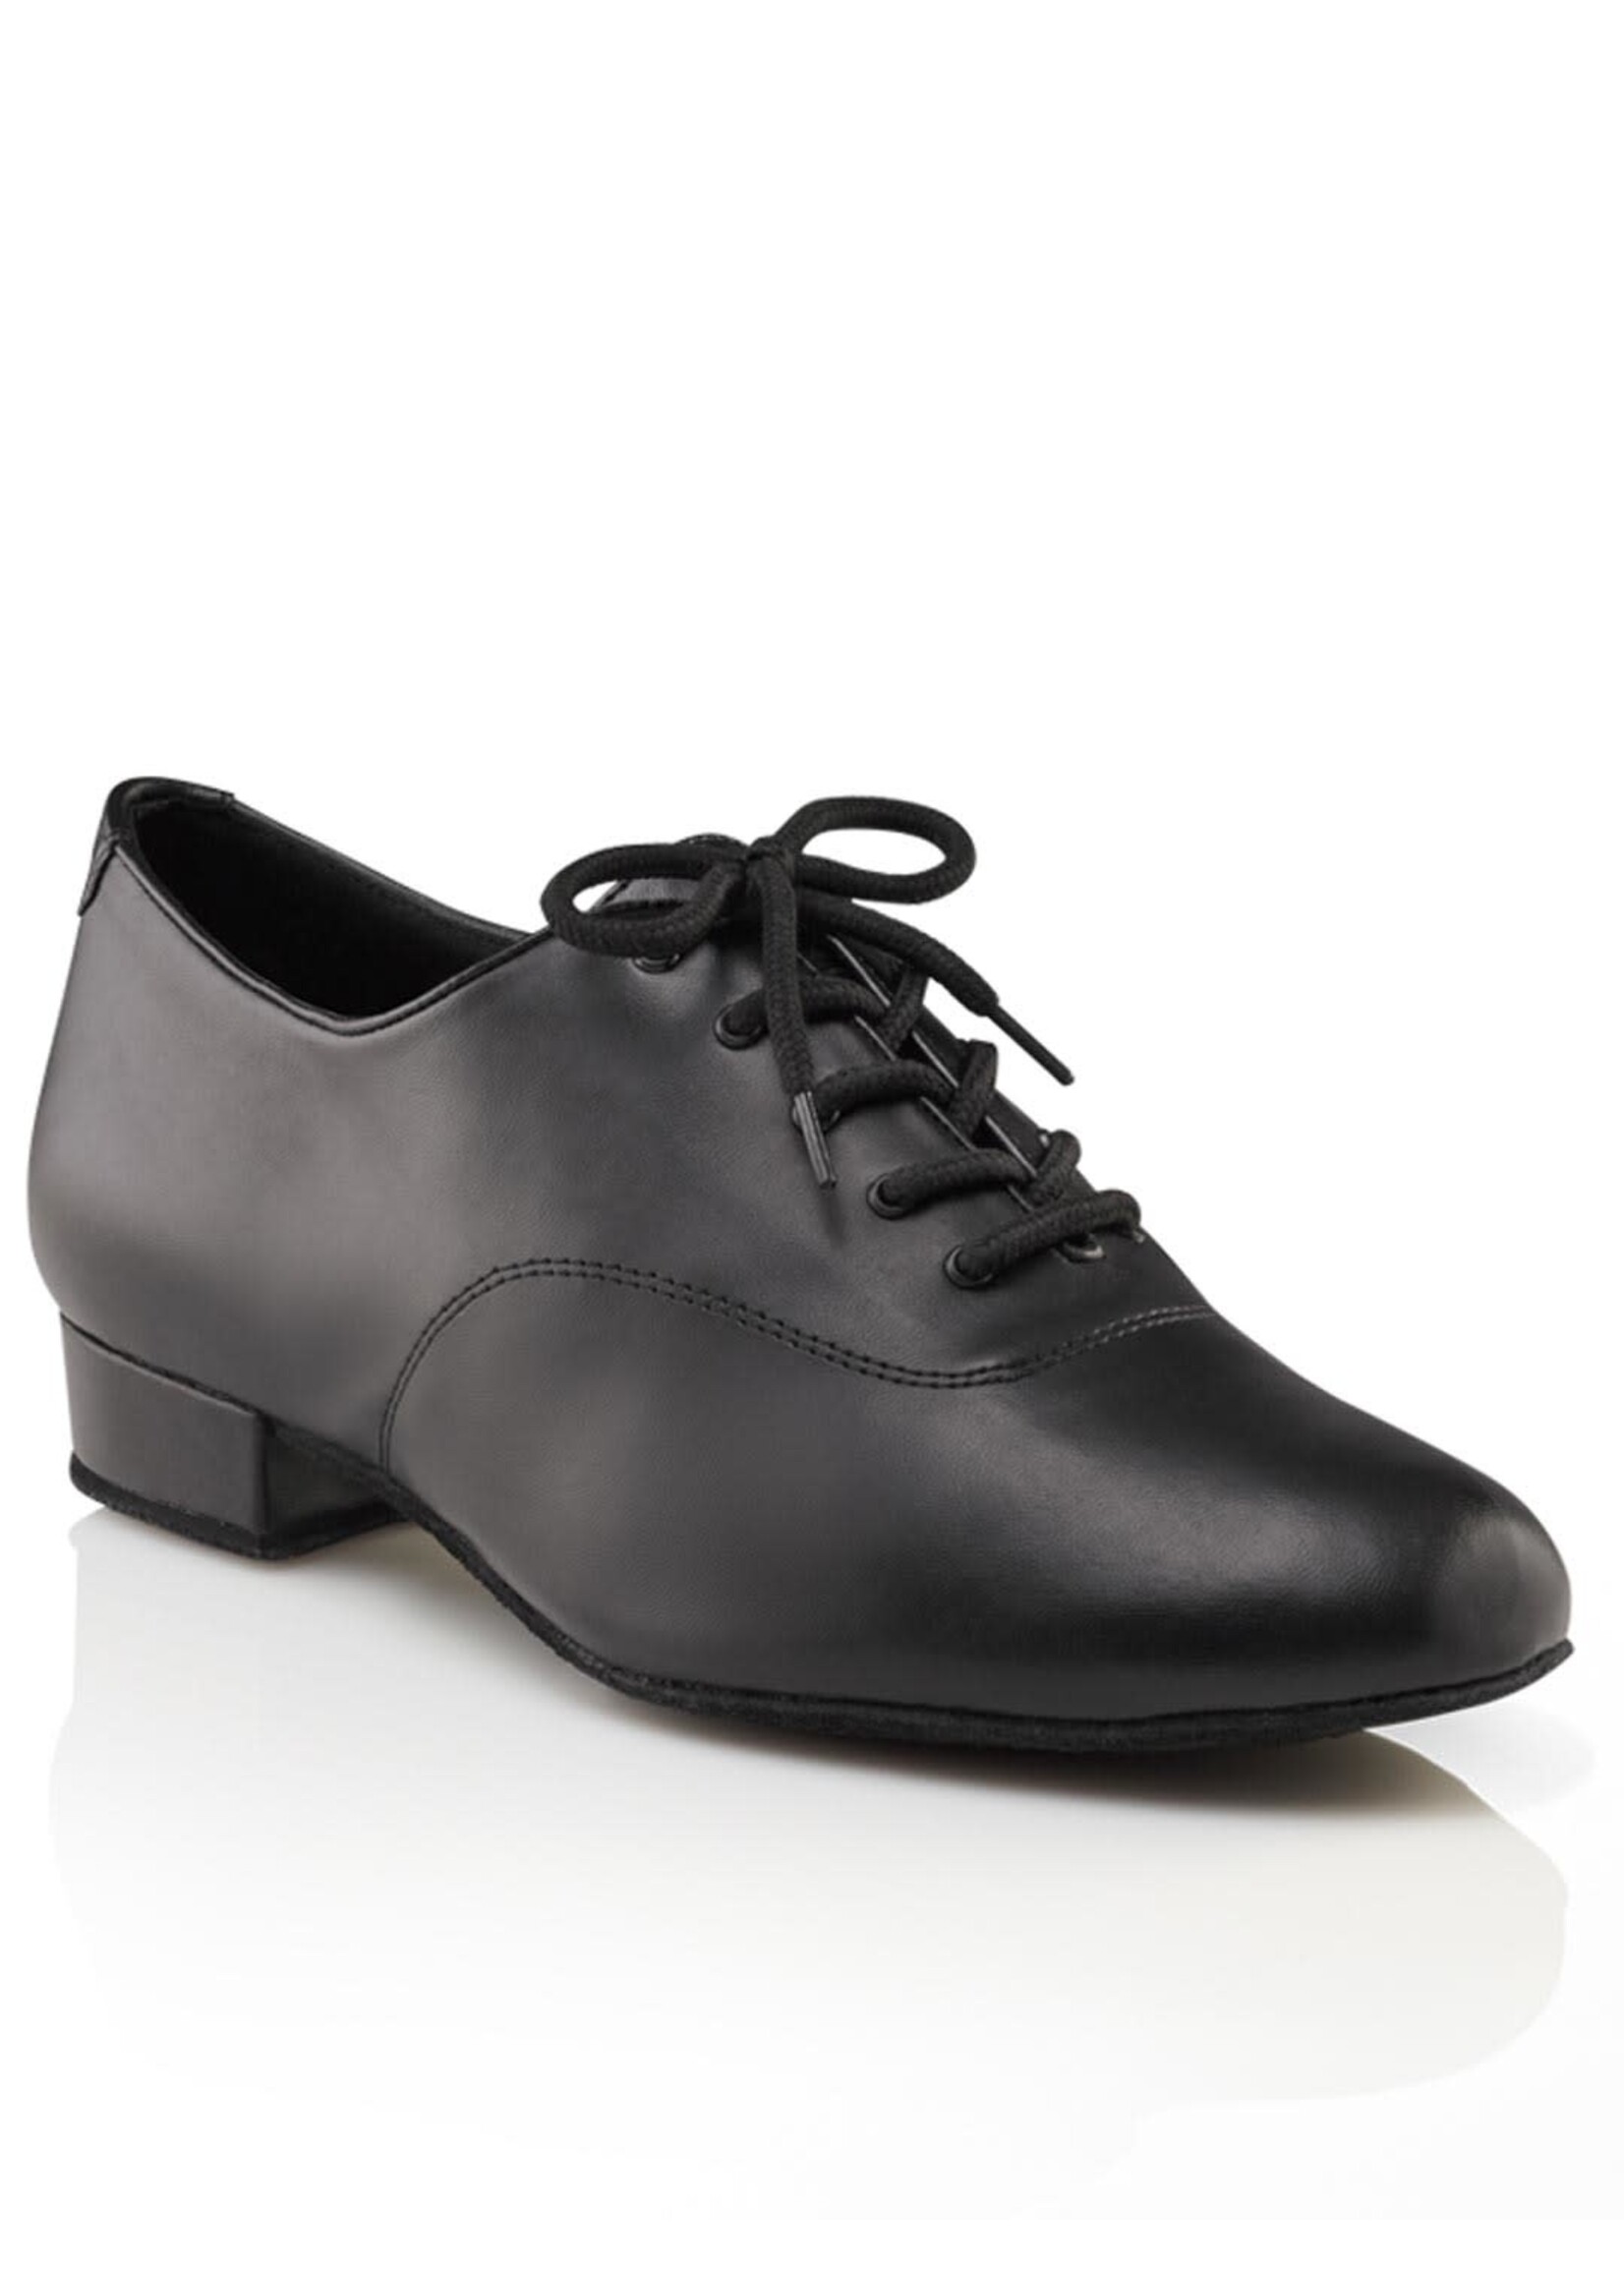 Capezio Capezio Men's Standard Ballroom Shoe